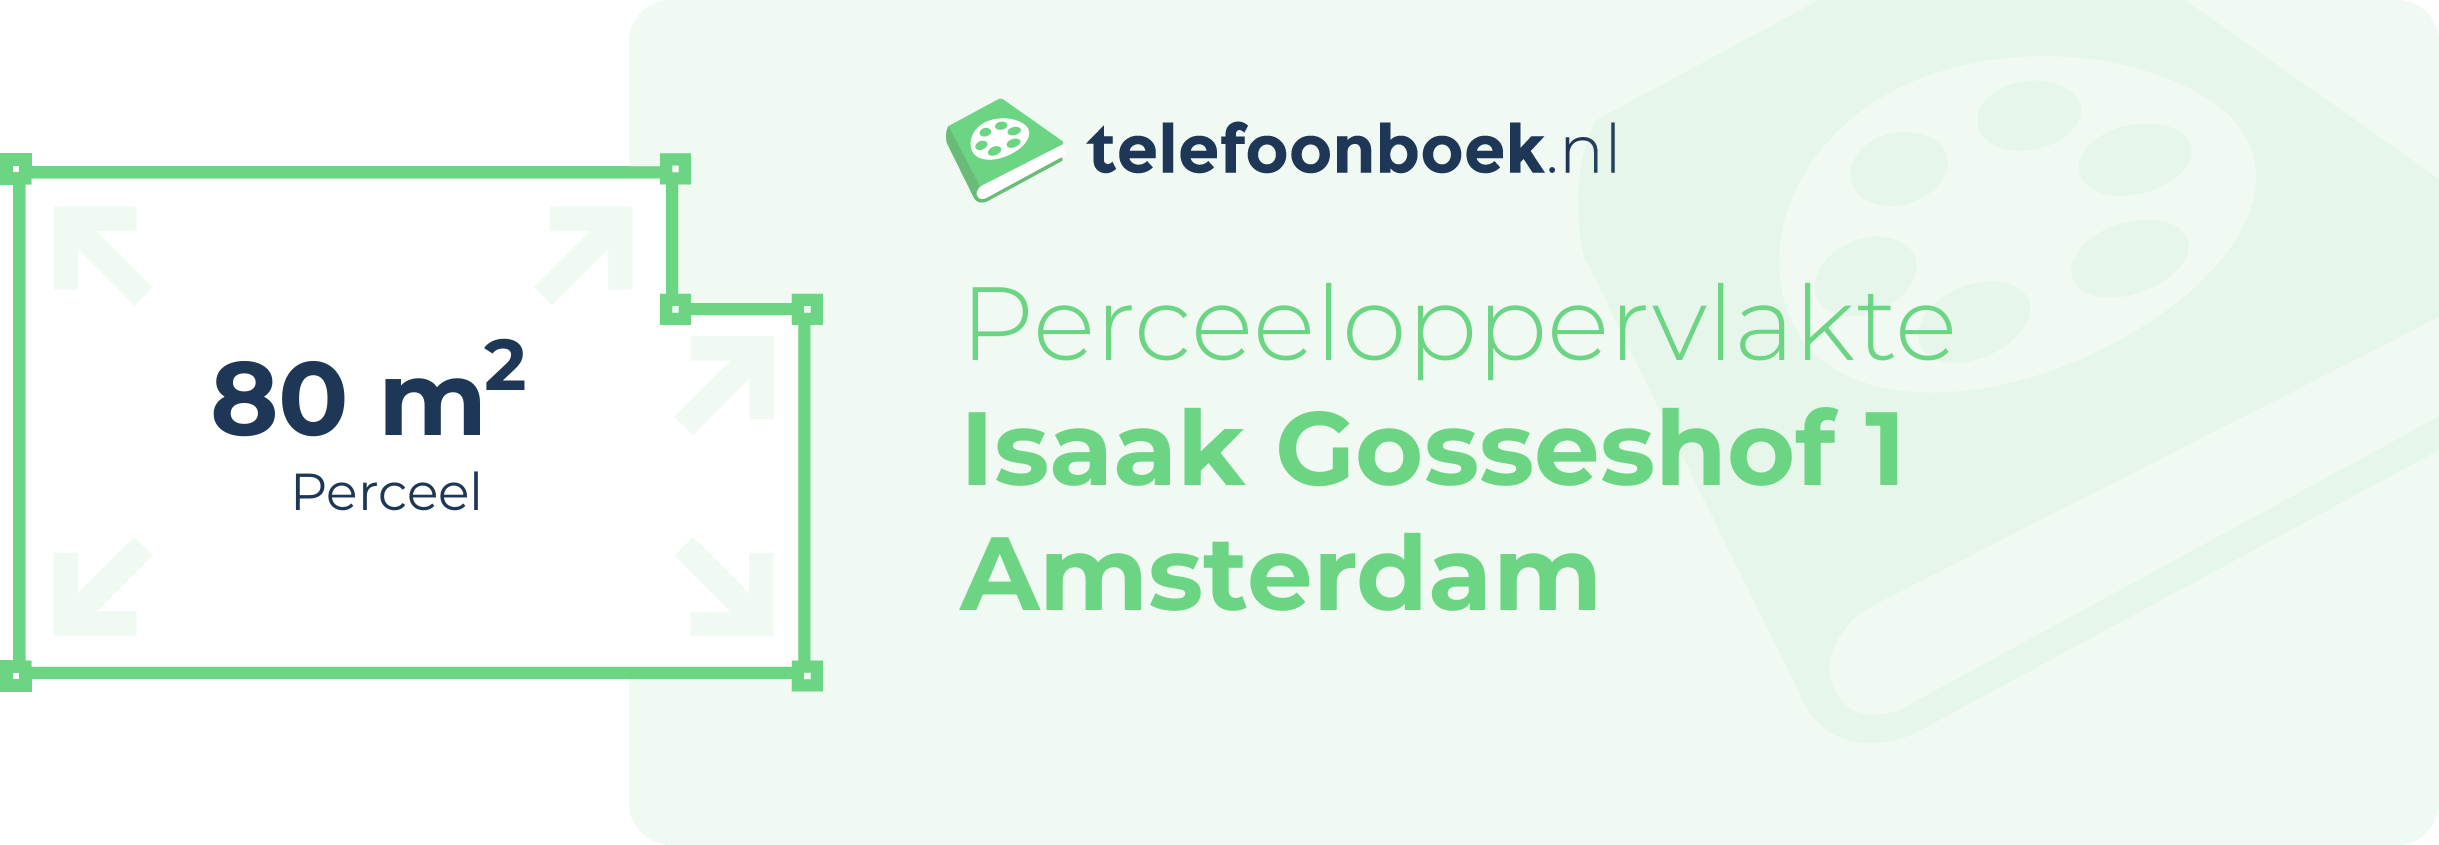 Perceeloppervlakte Isaak Gosseshof 1 Amsterdam